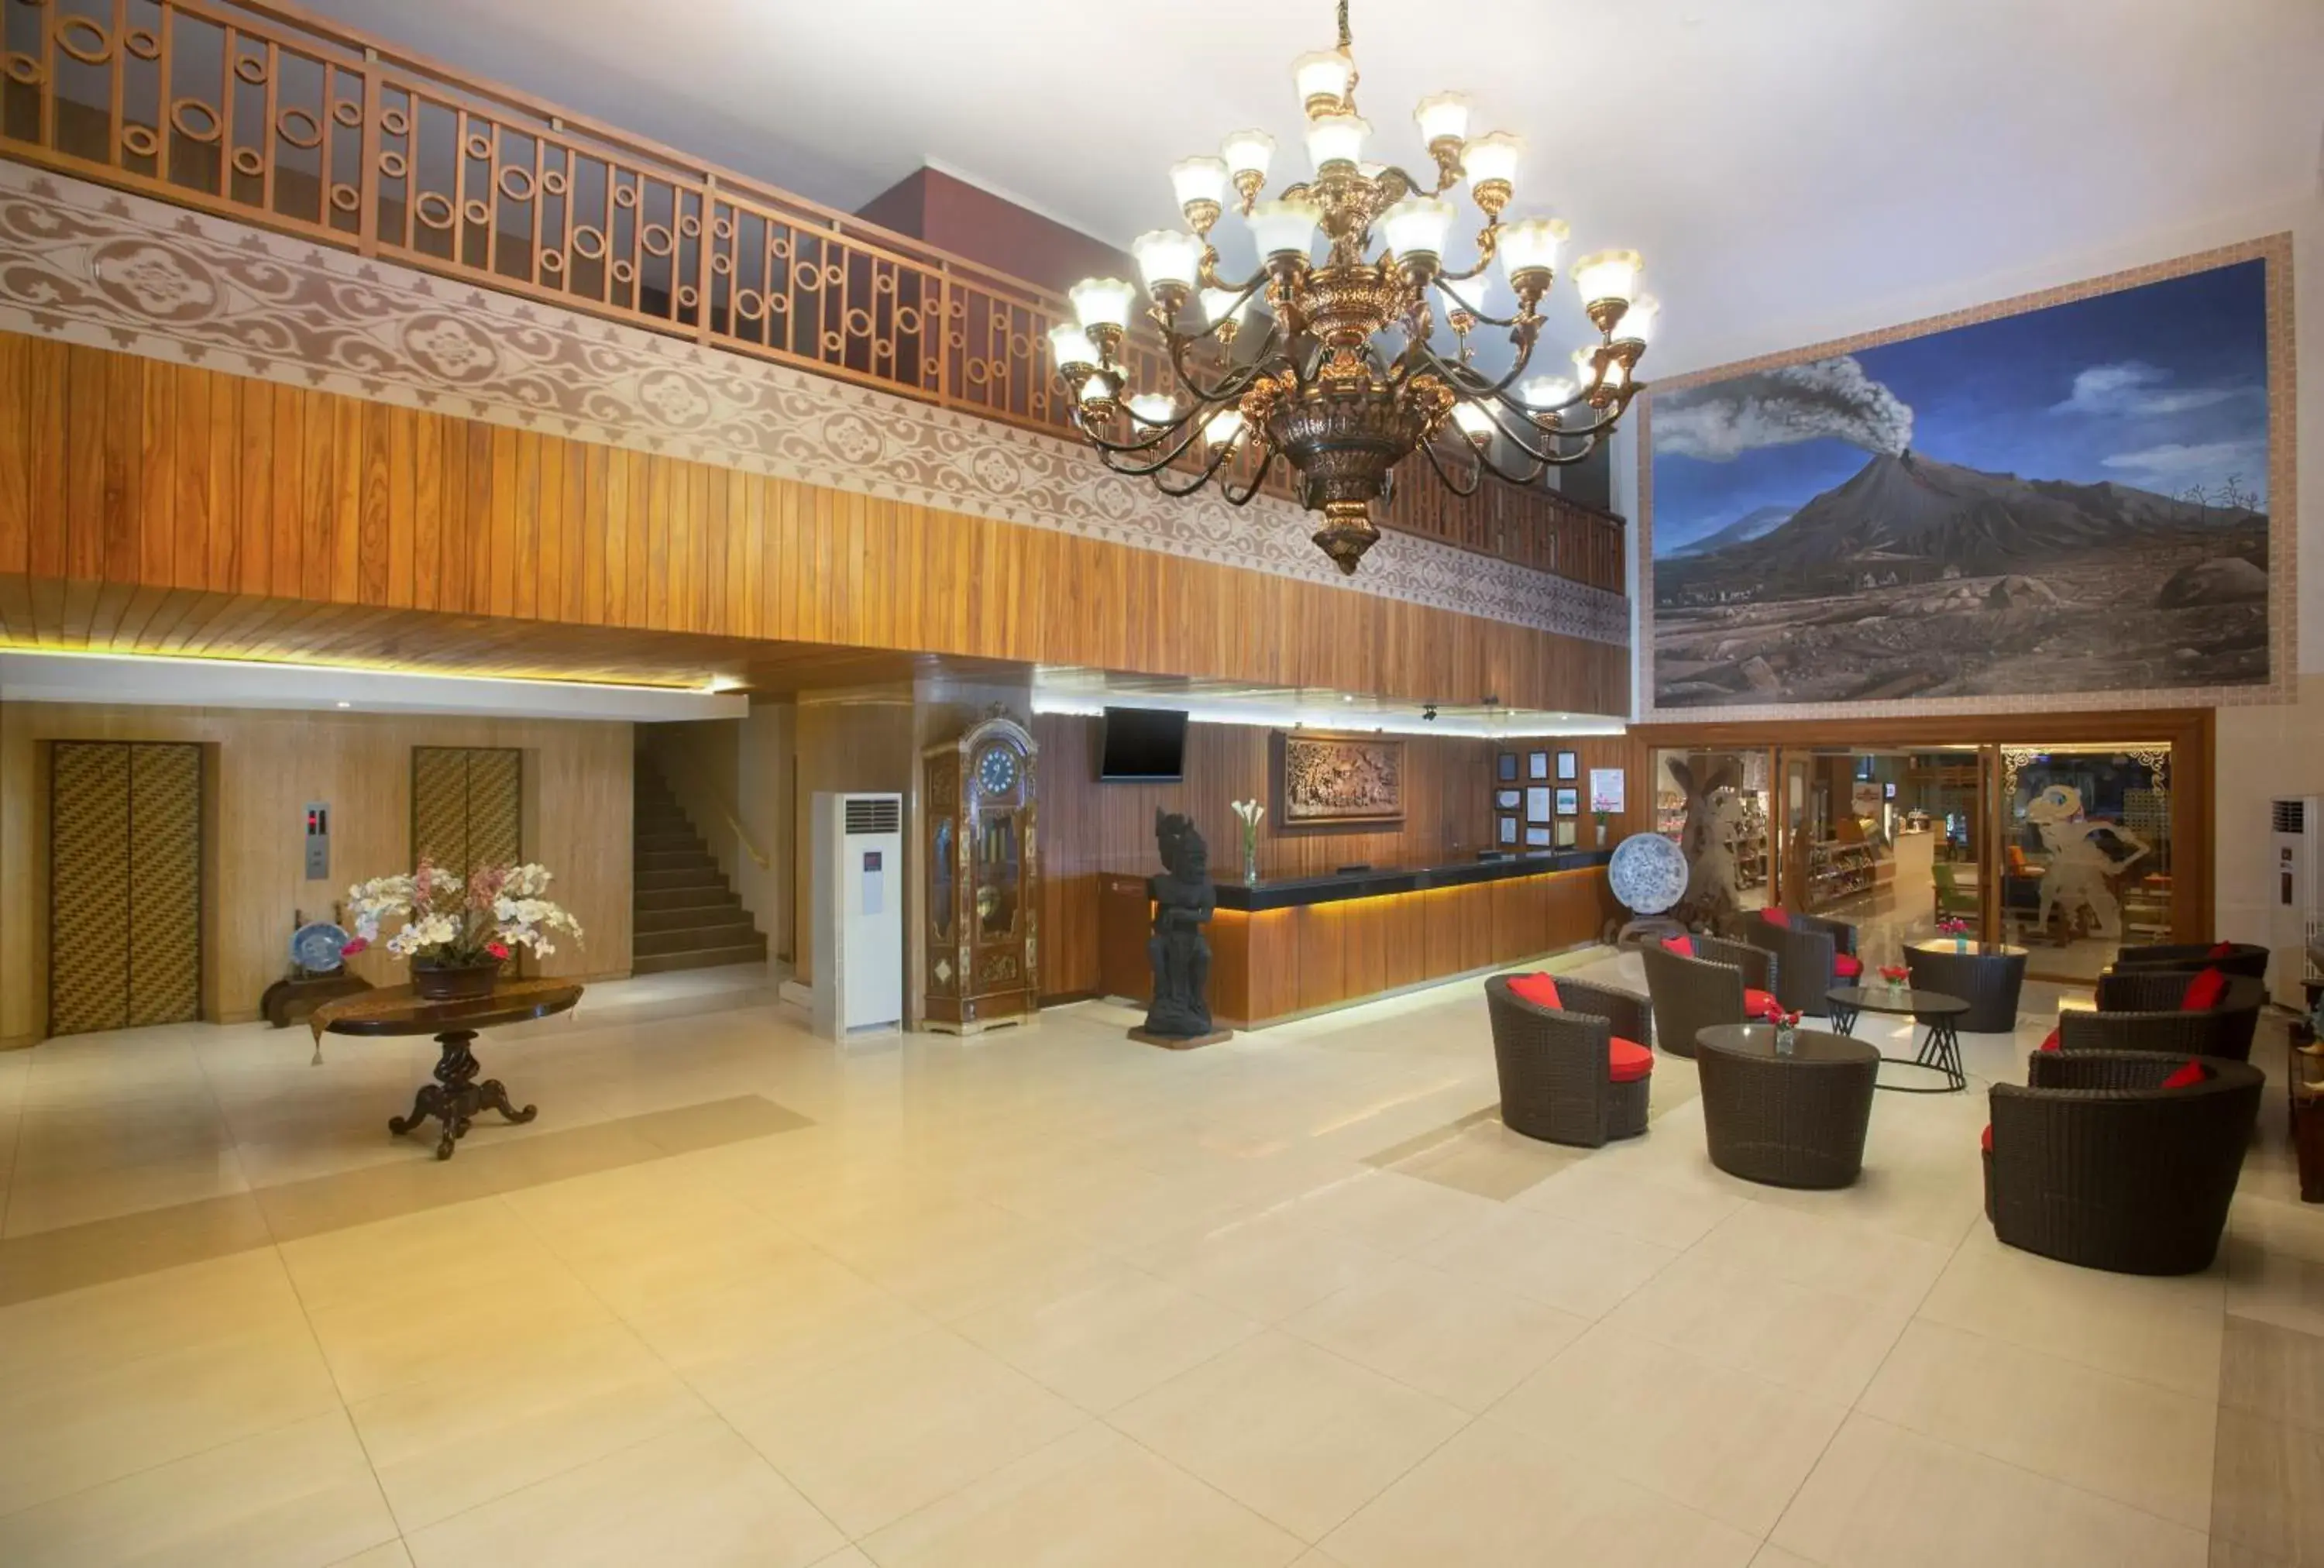 Lobby or reception, Lobby/Reception in Merapi Merbabu Hotels